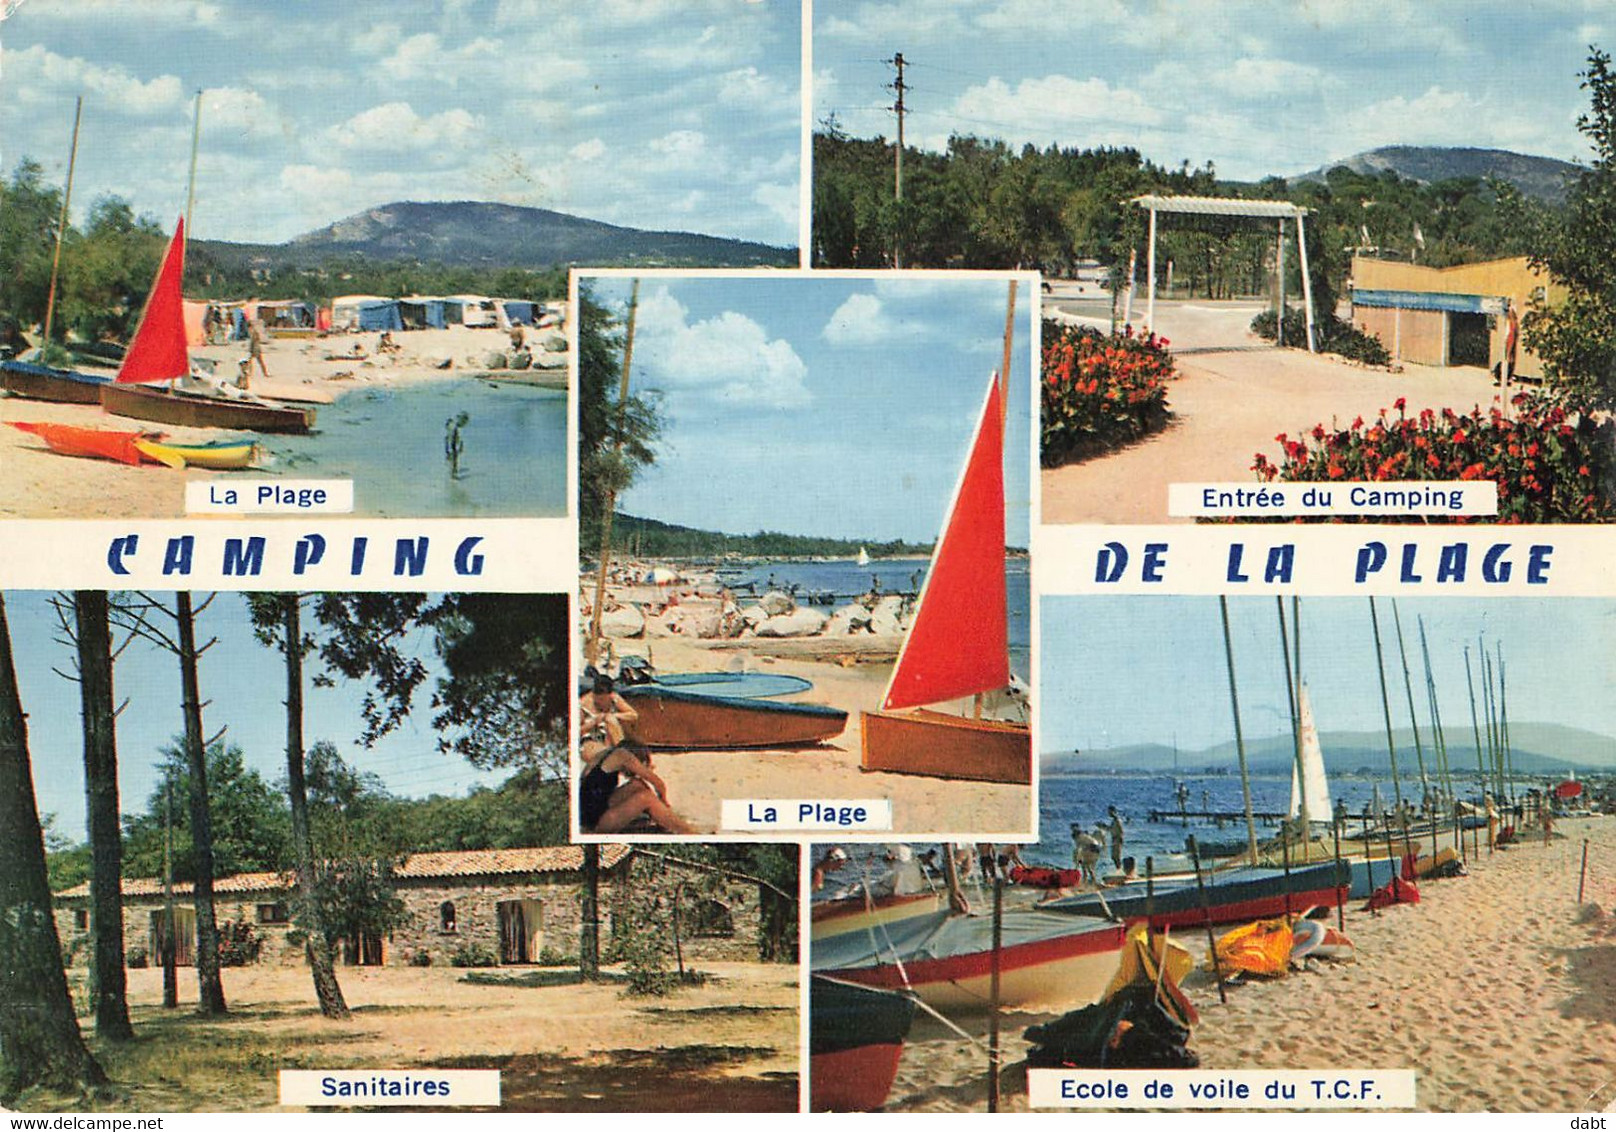 lot de 780 cartes postales principalement cartes modernes de France, cartes scannées incluses